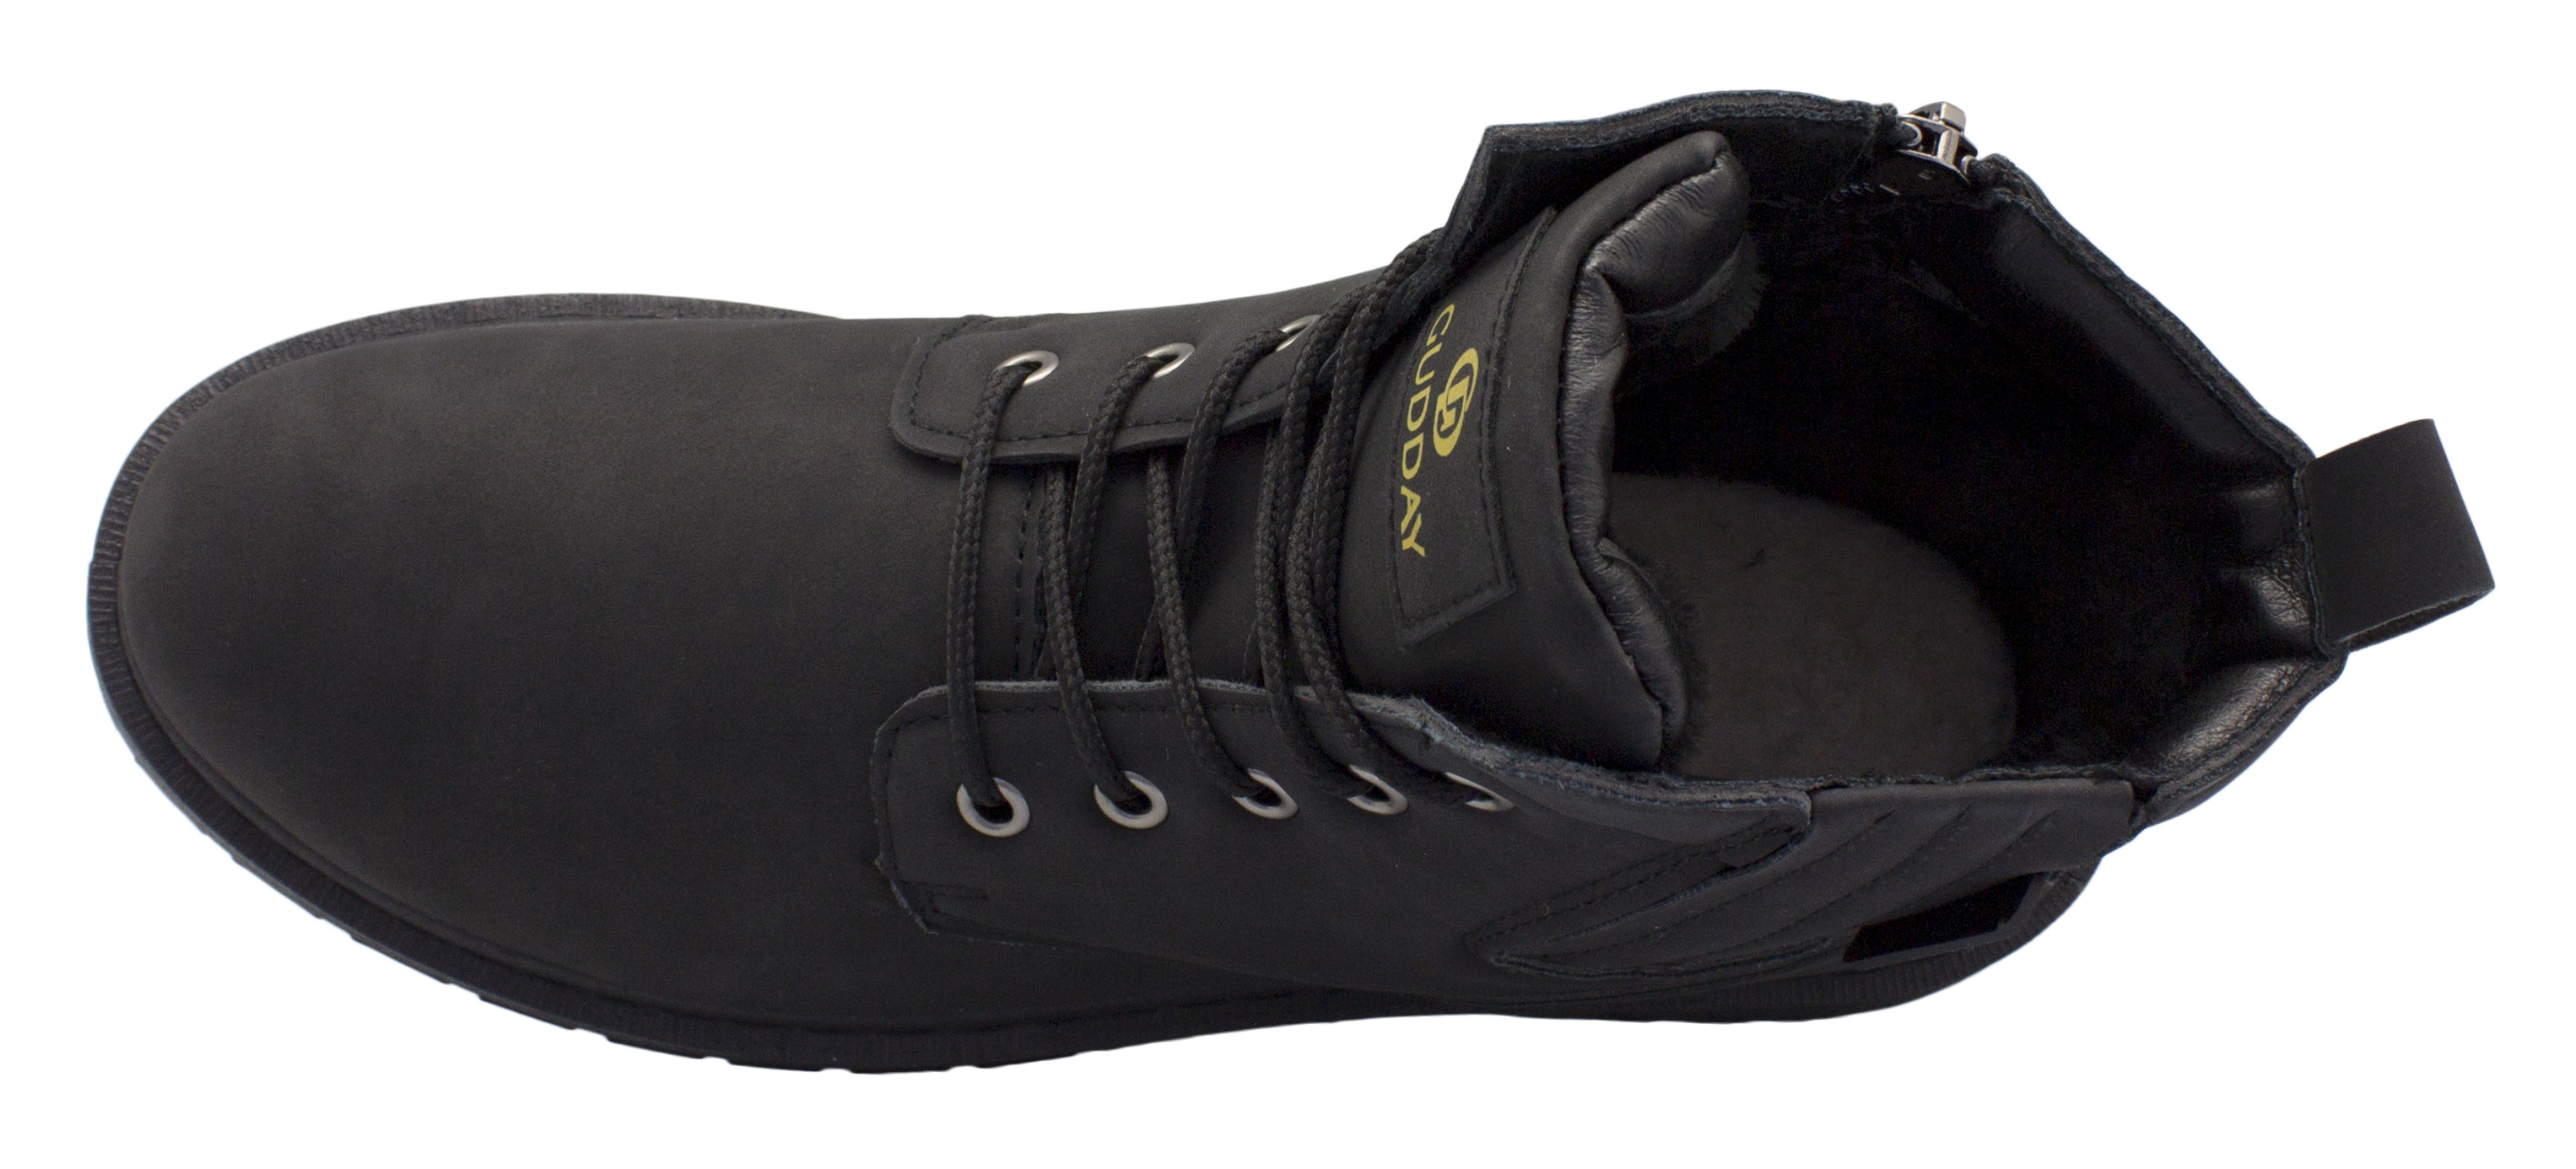 Gudday 12221-2 мужские зимние ортопедические ботинки черный — купить вМоскве в интернет-магазине ОРТОЛАЙН